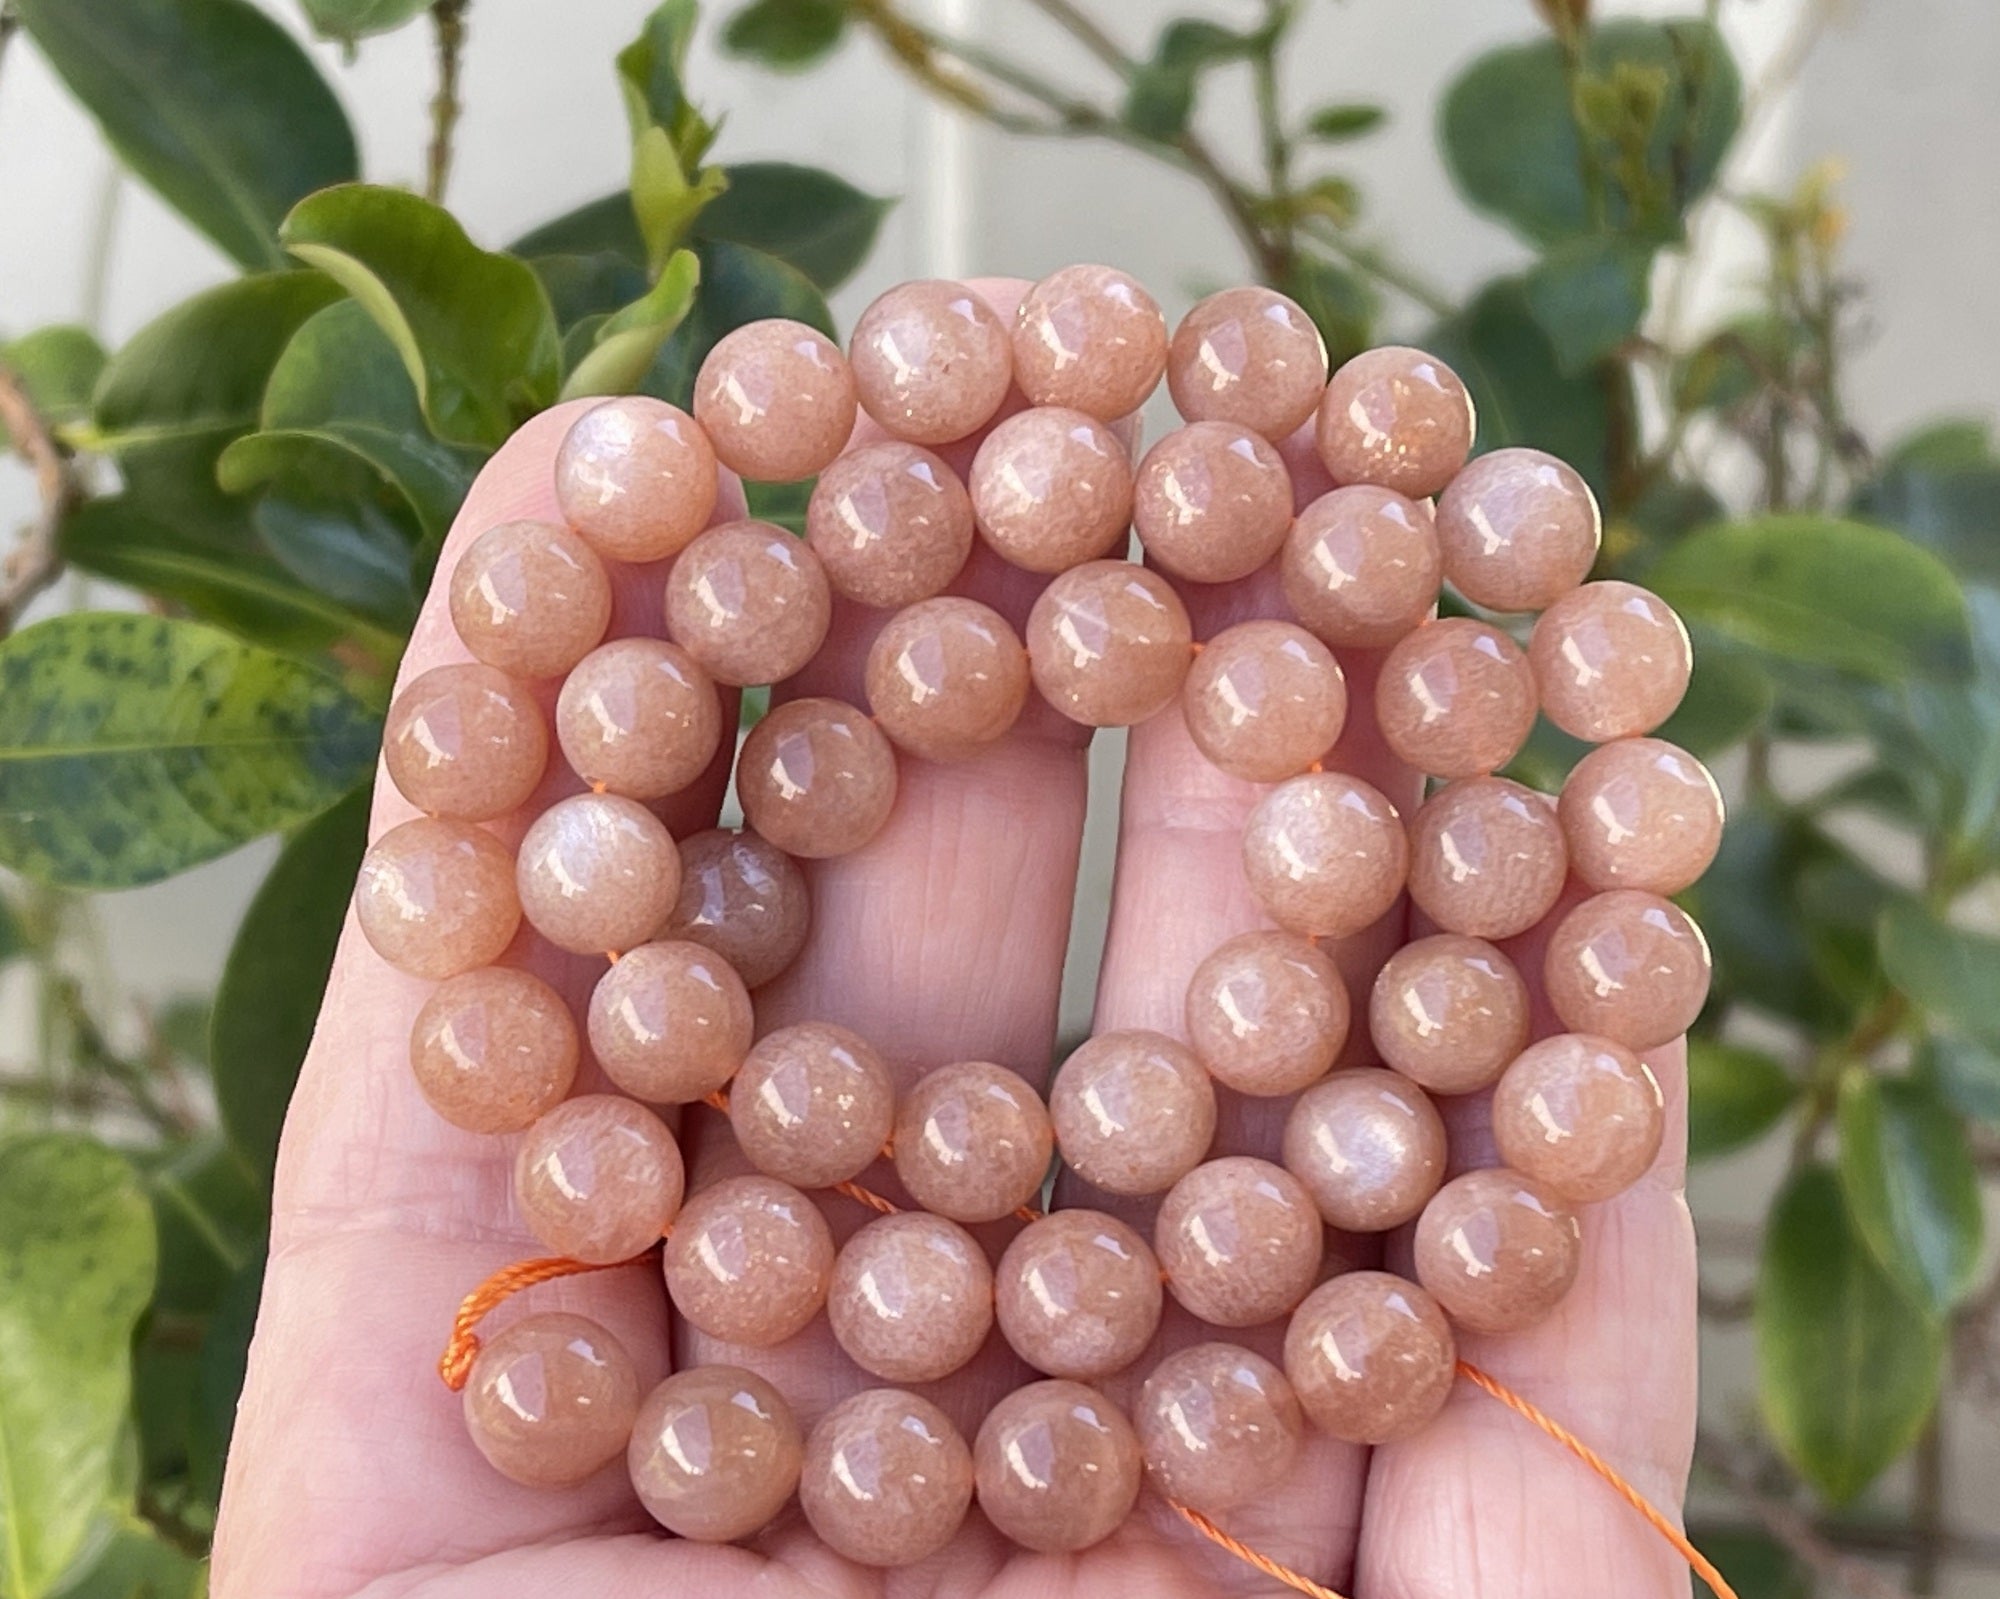 Peach Sunstone 8mm round natural gemstone beads 15.5" strand